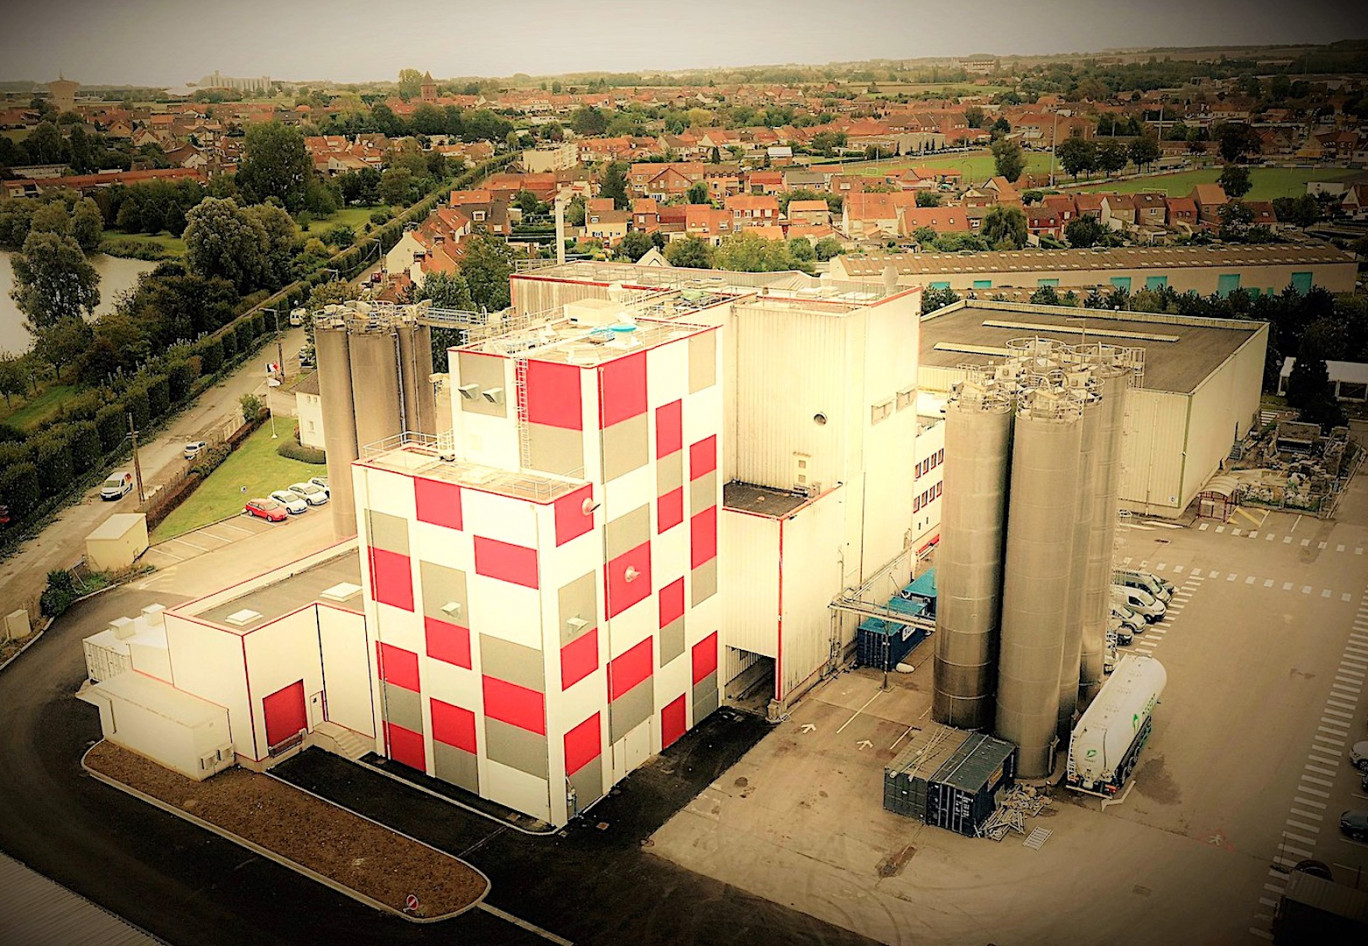 Le site d’Arques augmente sa capacité de production de farines de 15 000 tonnes par an. © Limagrain